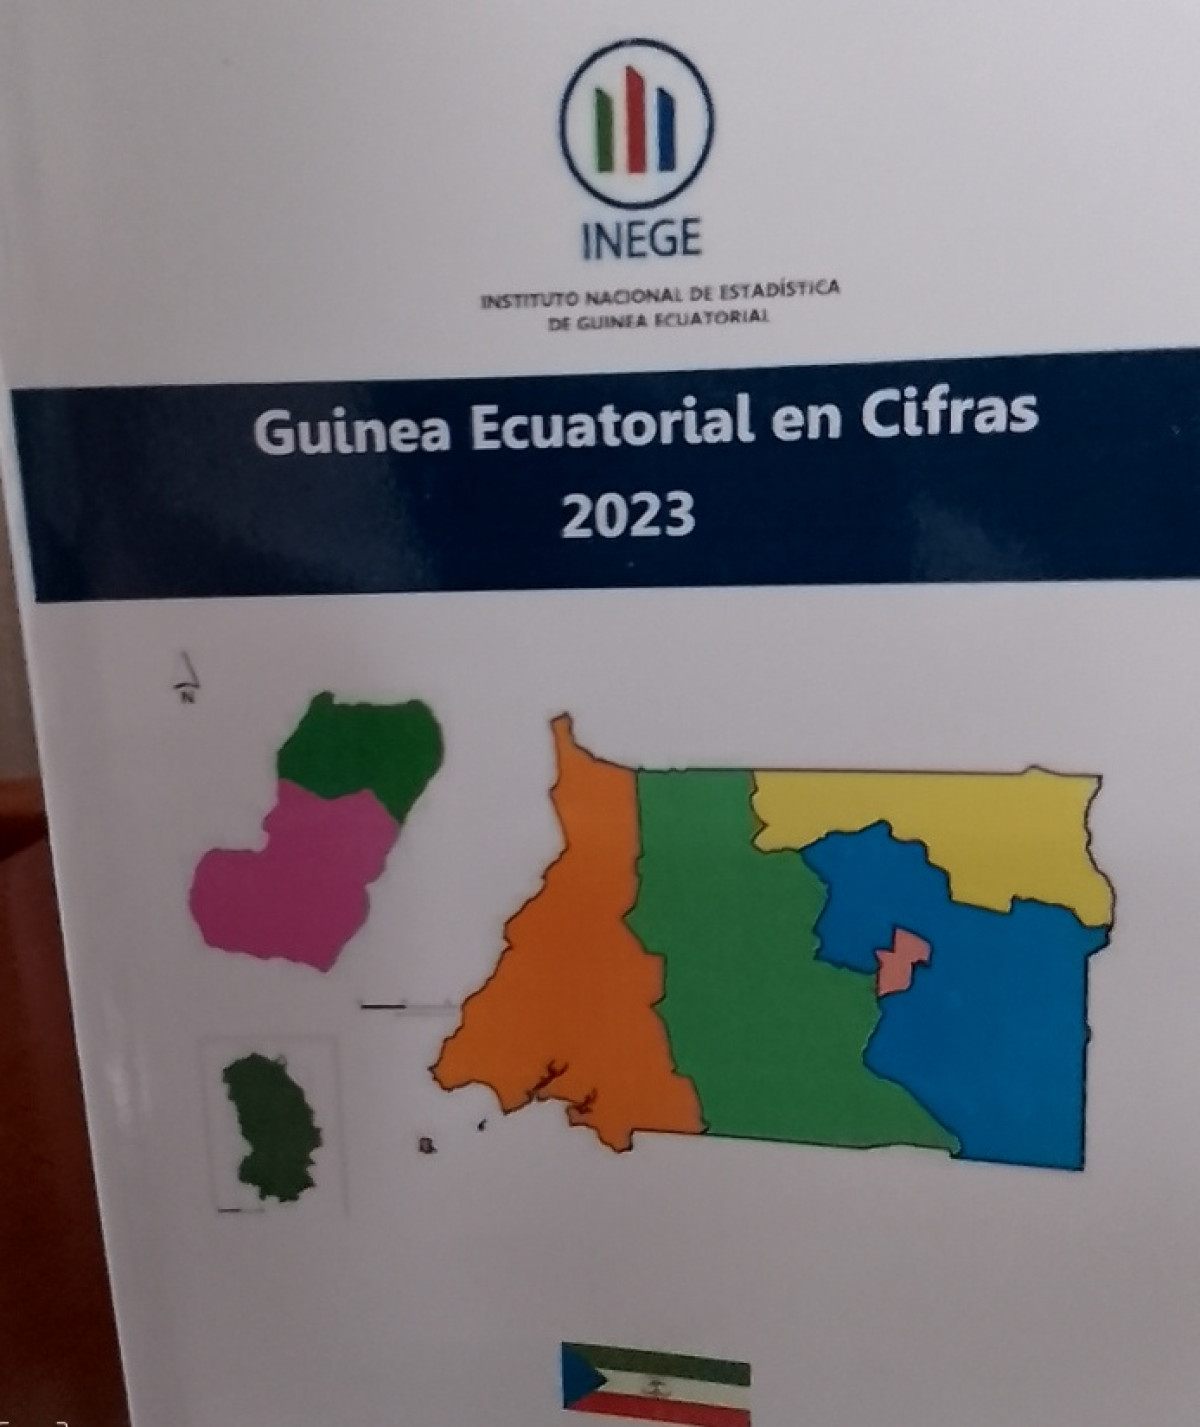 Pagina oficial de guinea ecuatorial